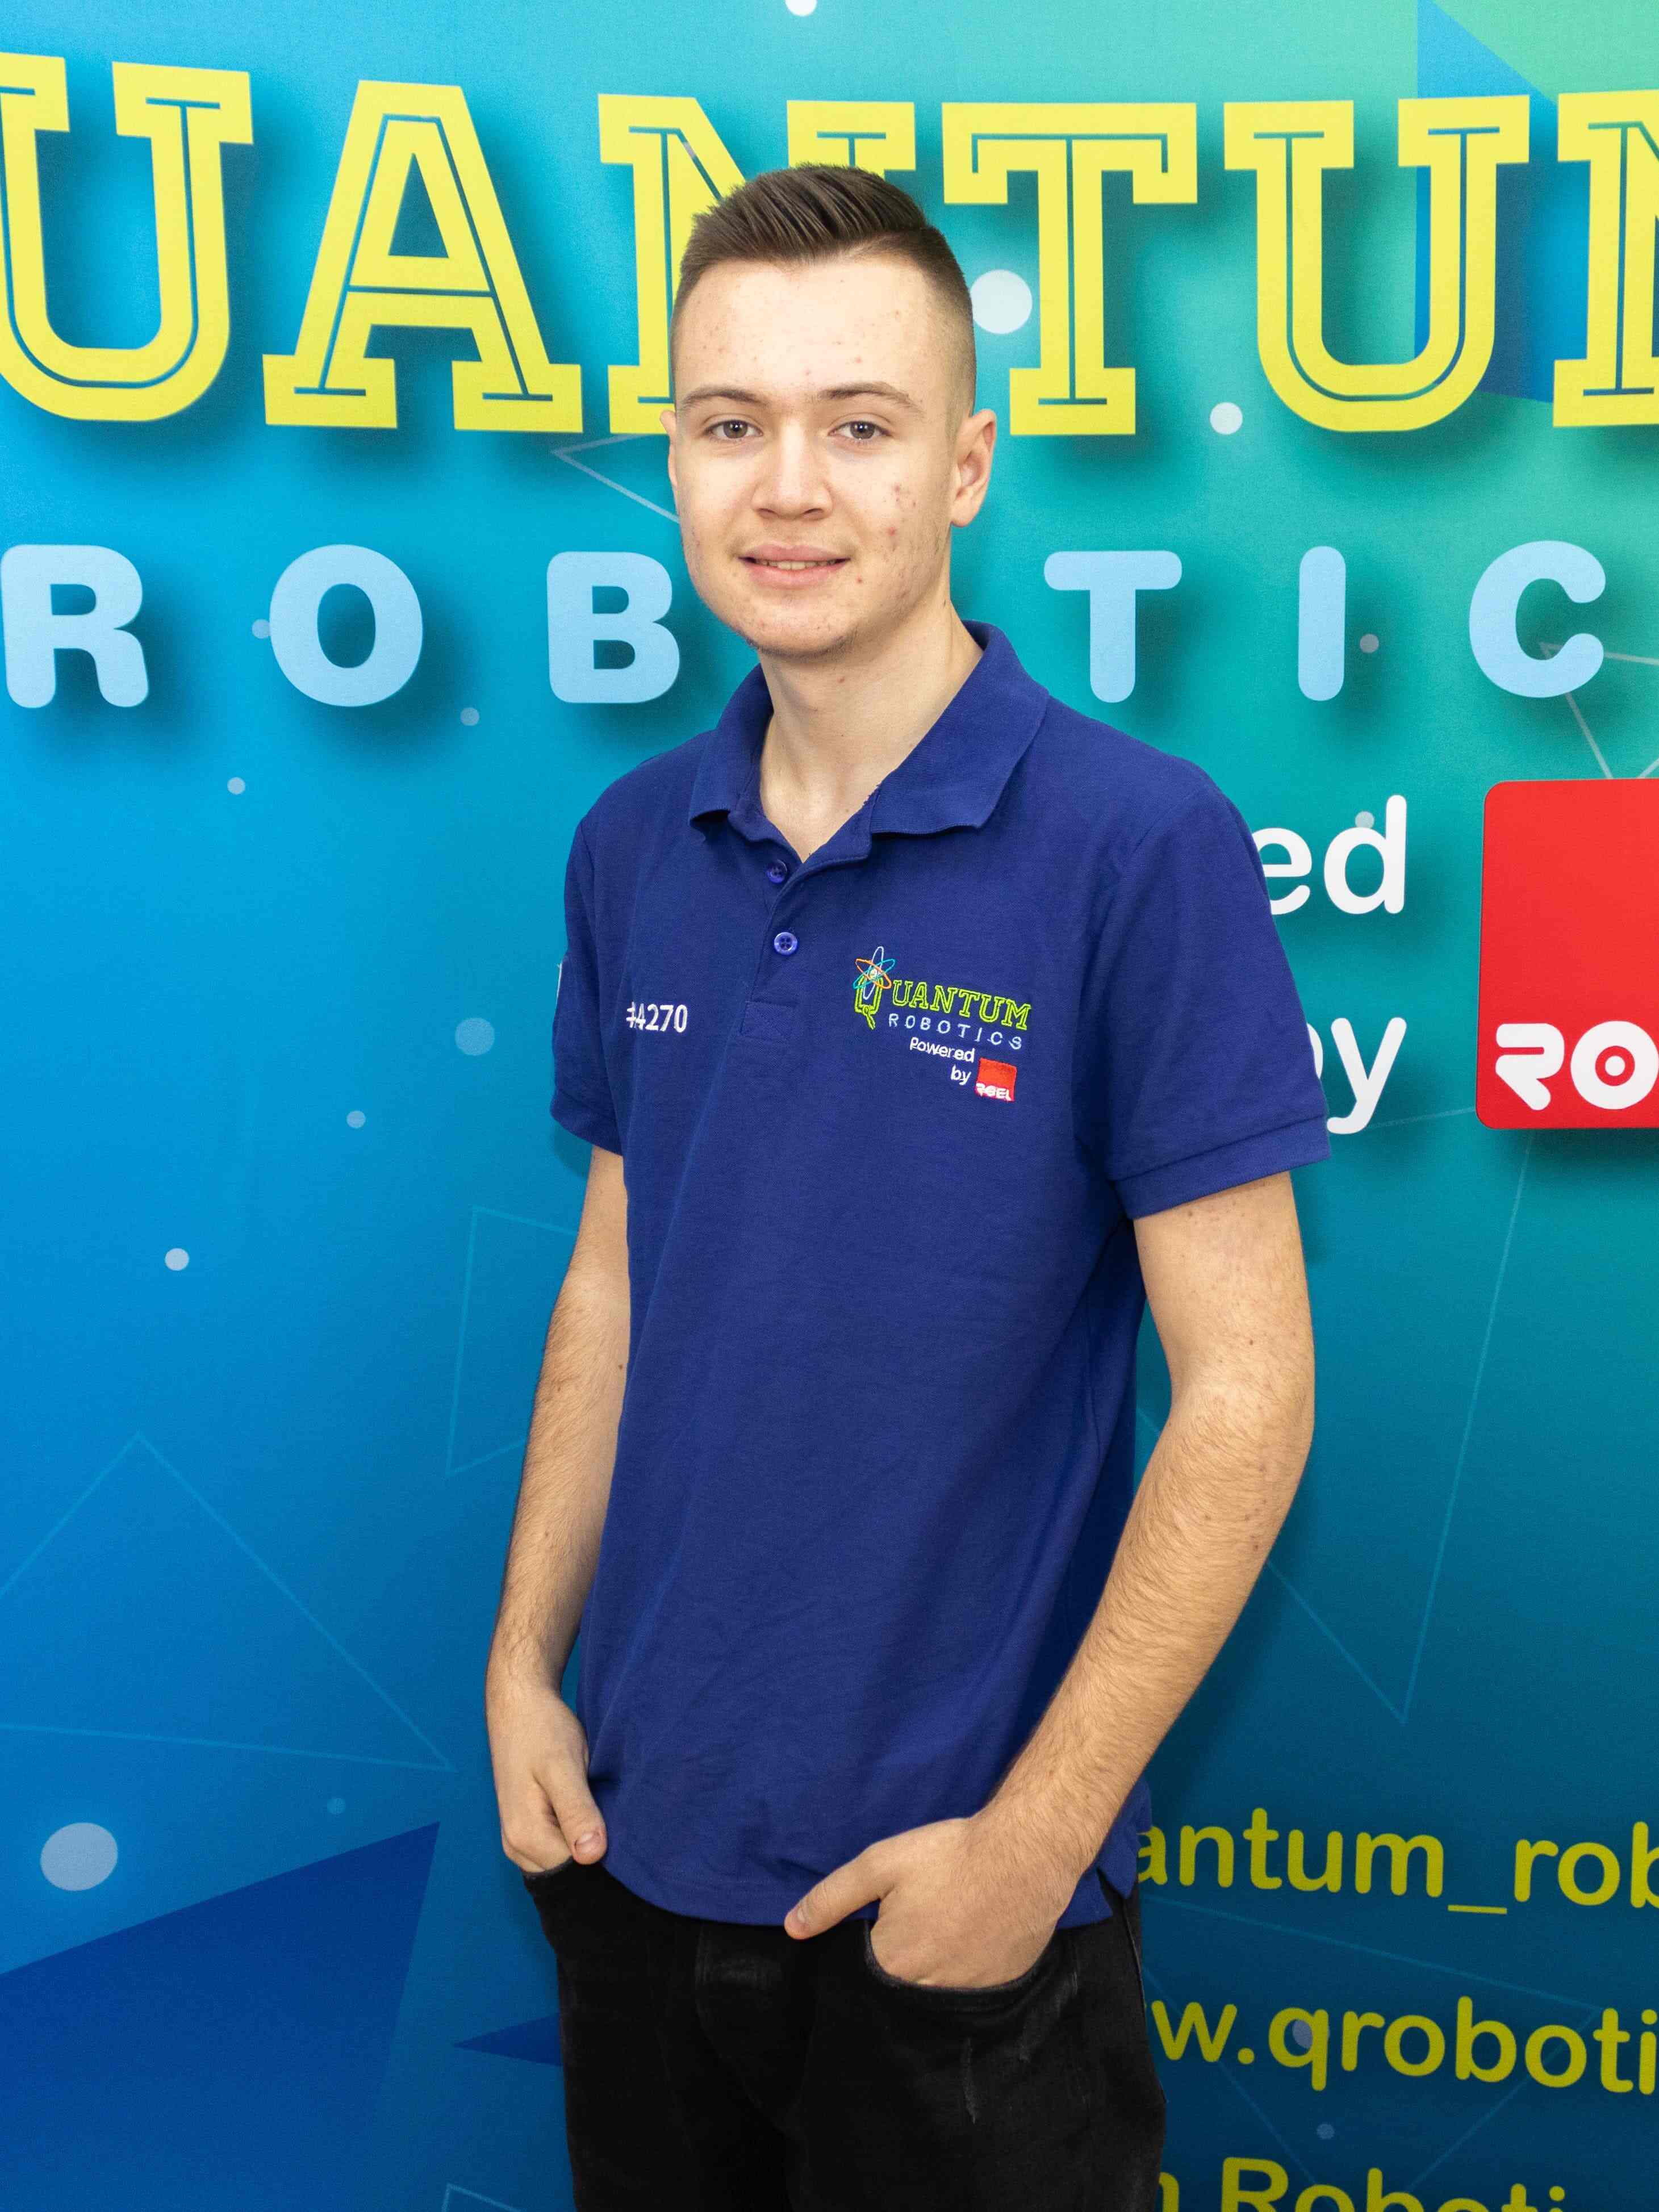 Quantum-Robotics-FTC-FIRST-competiton-team-members-Ianis-Pasarelu